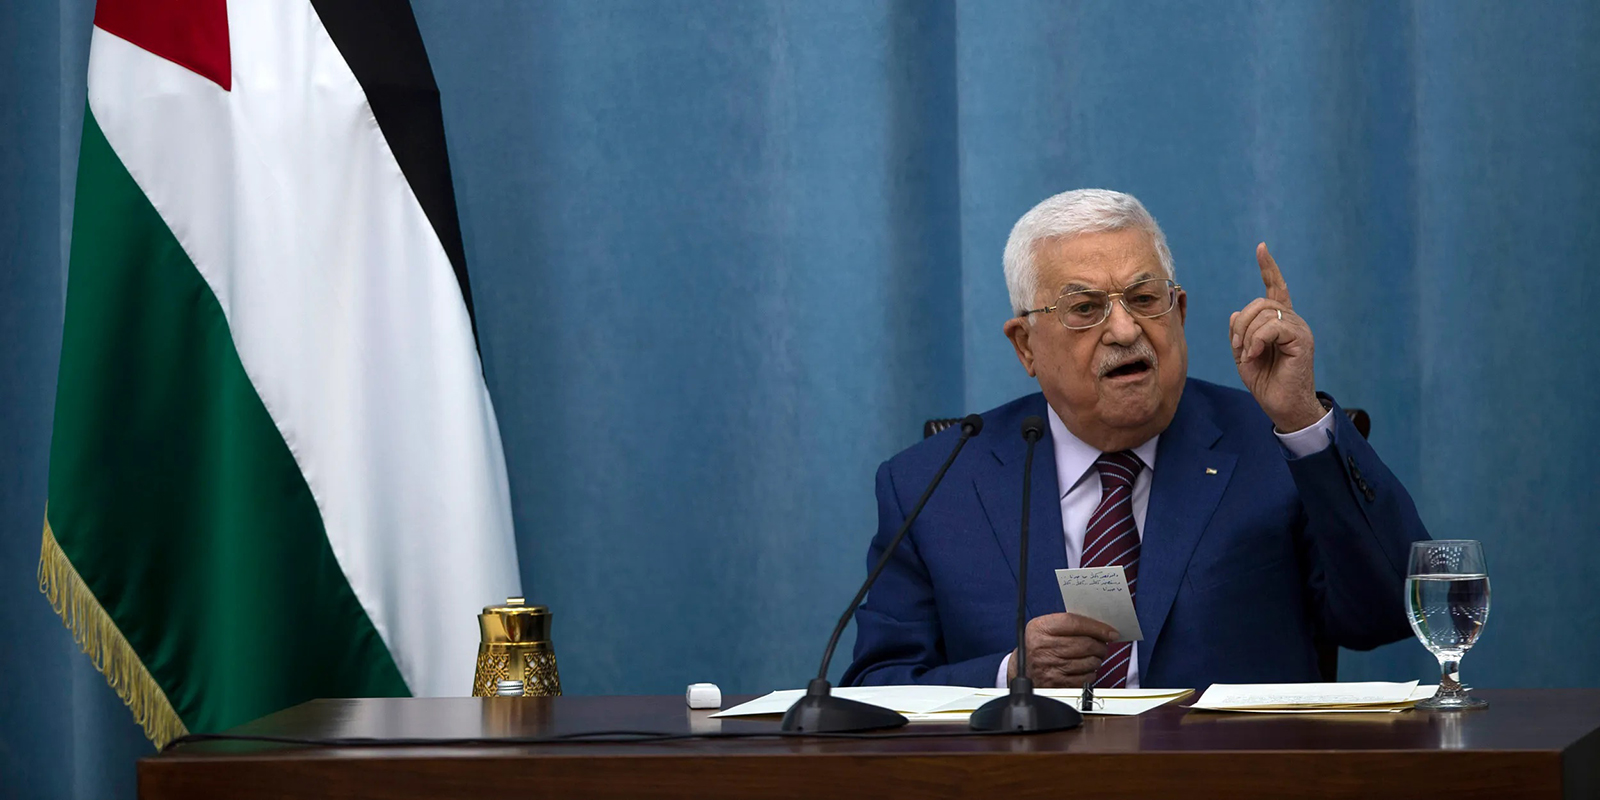 الرئيس الفلسطيني محمود عباس يندد باغتيال إسماعيل هنية ويدعو للوحدة